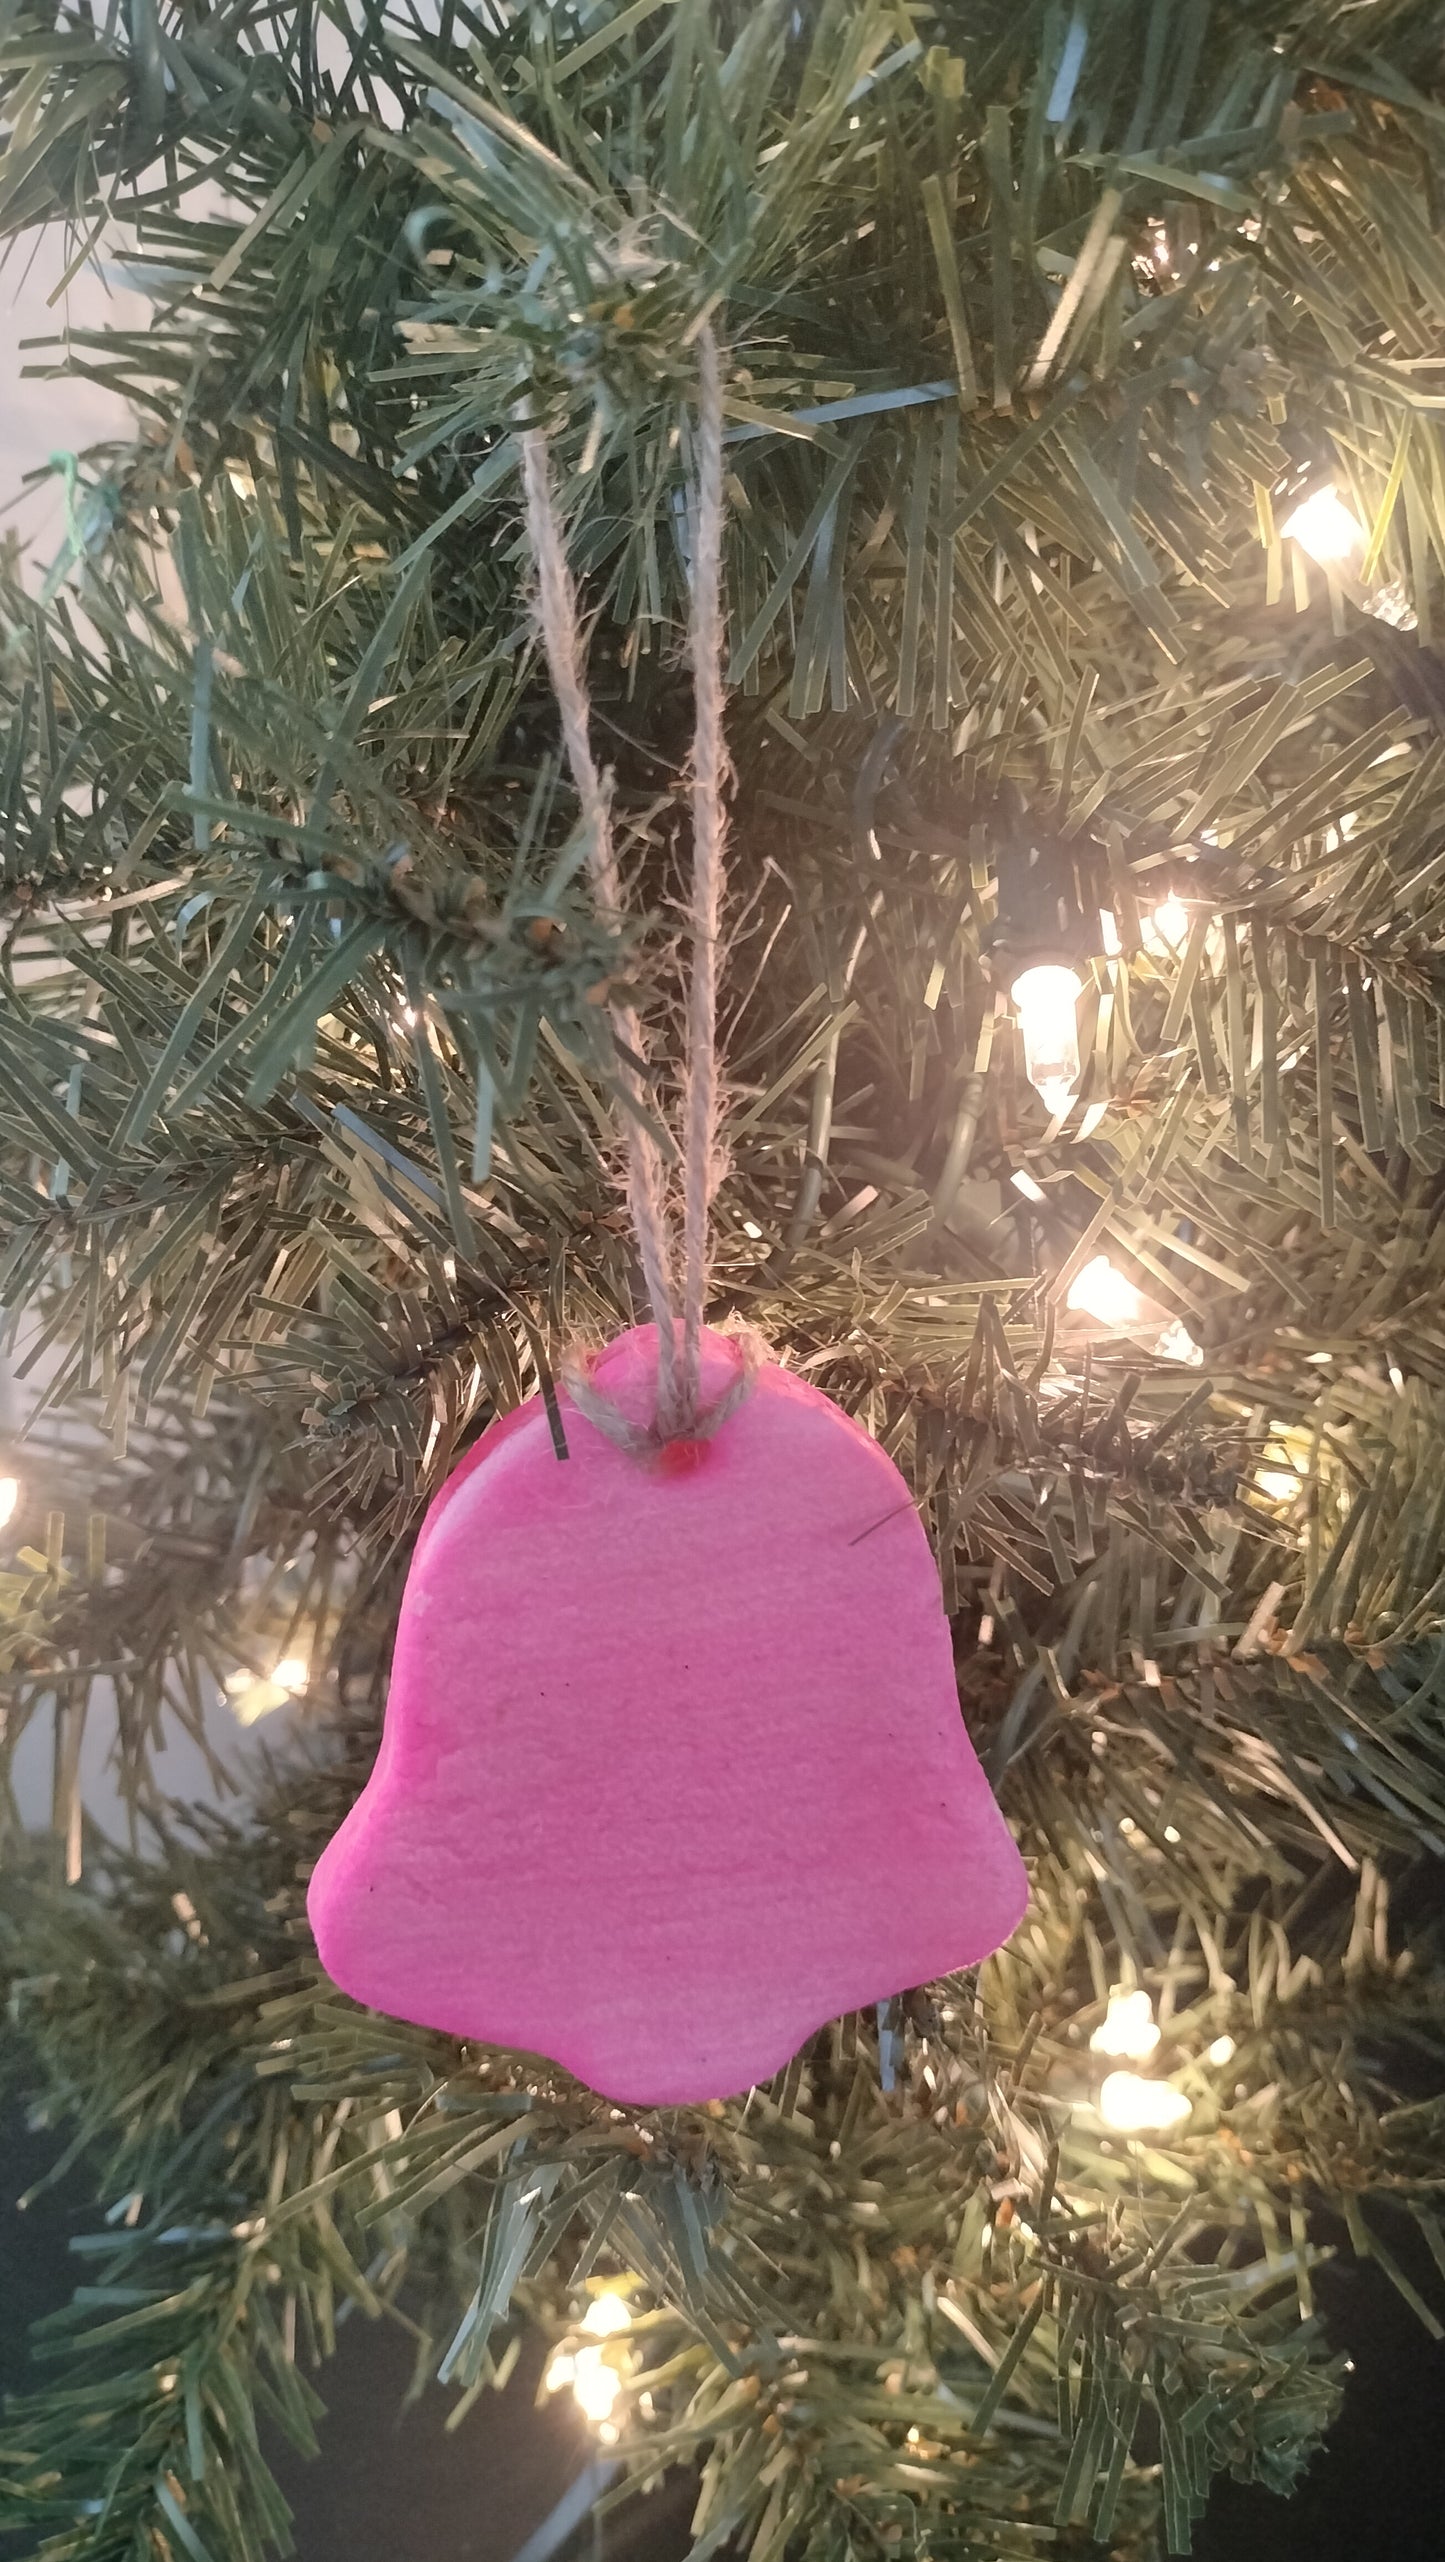 Handmade Pink Bell Salt Dough Ornament